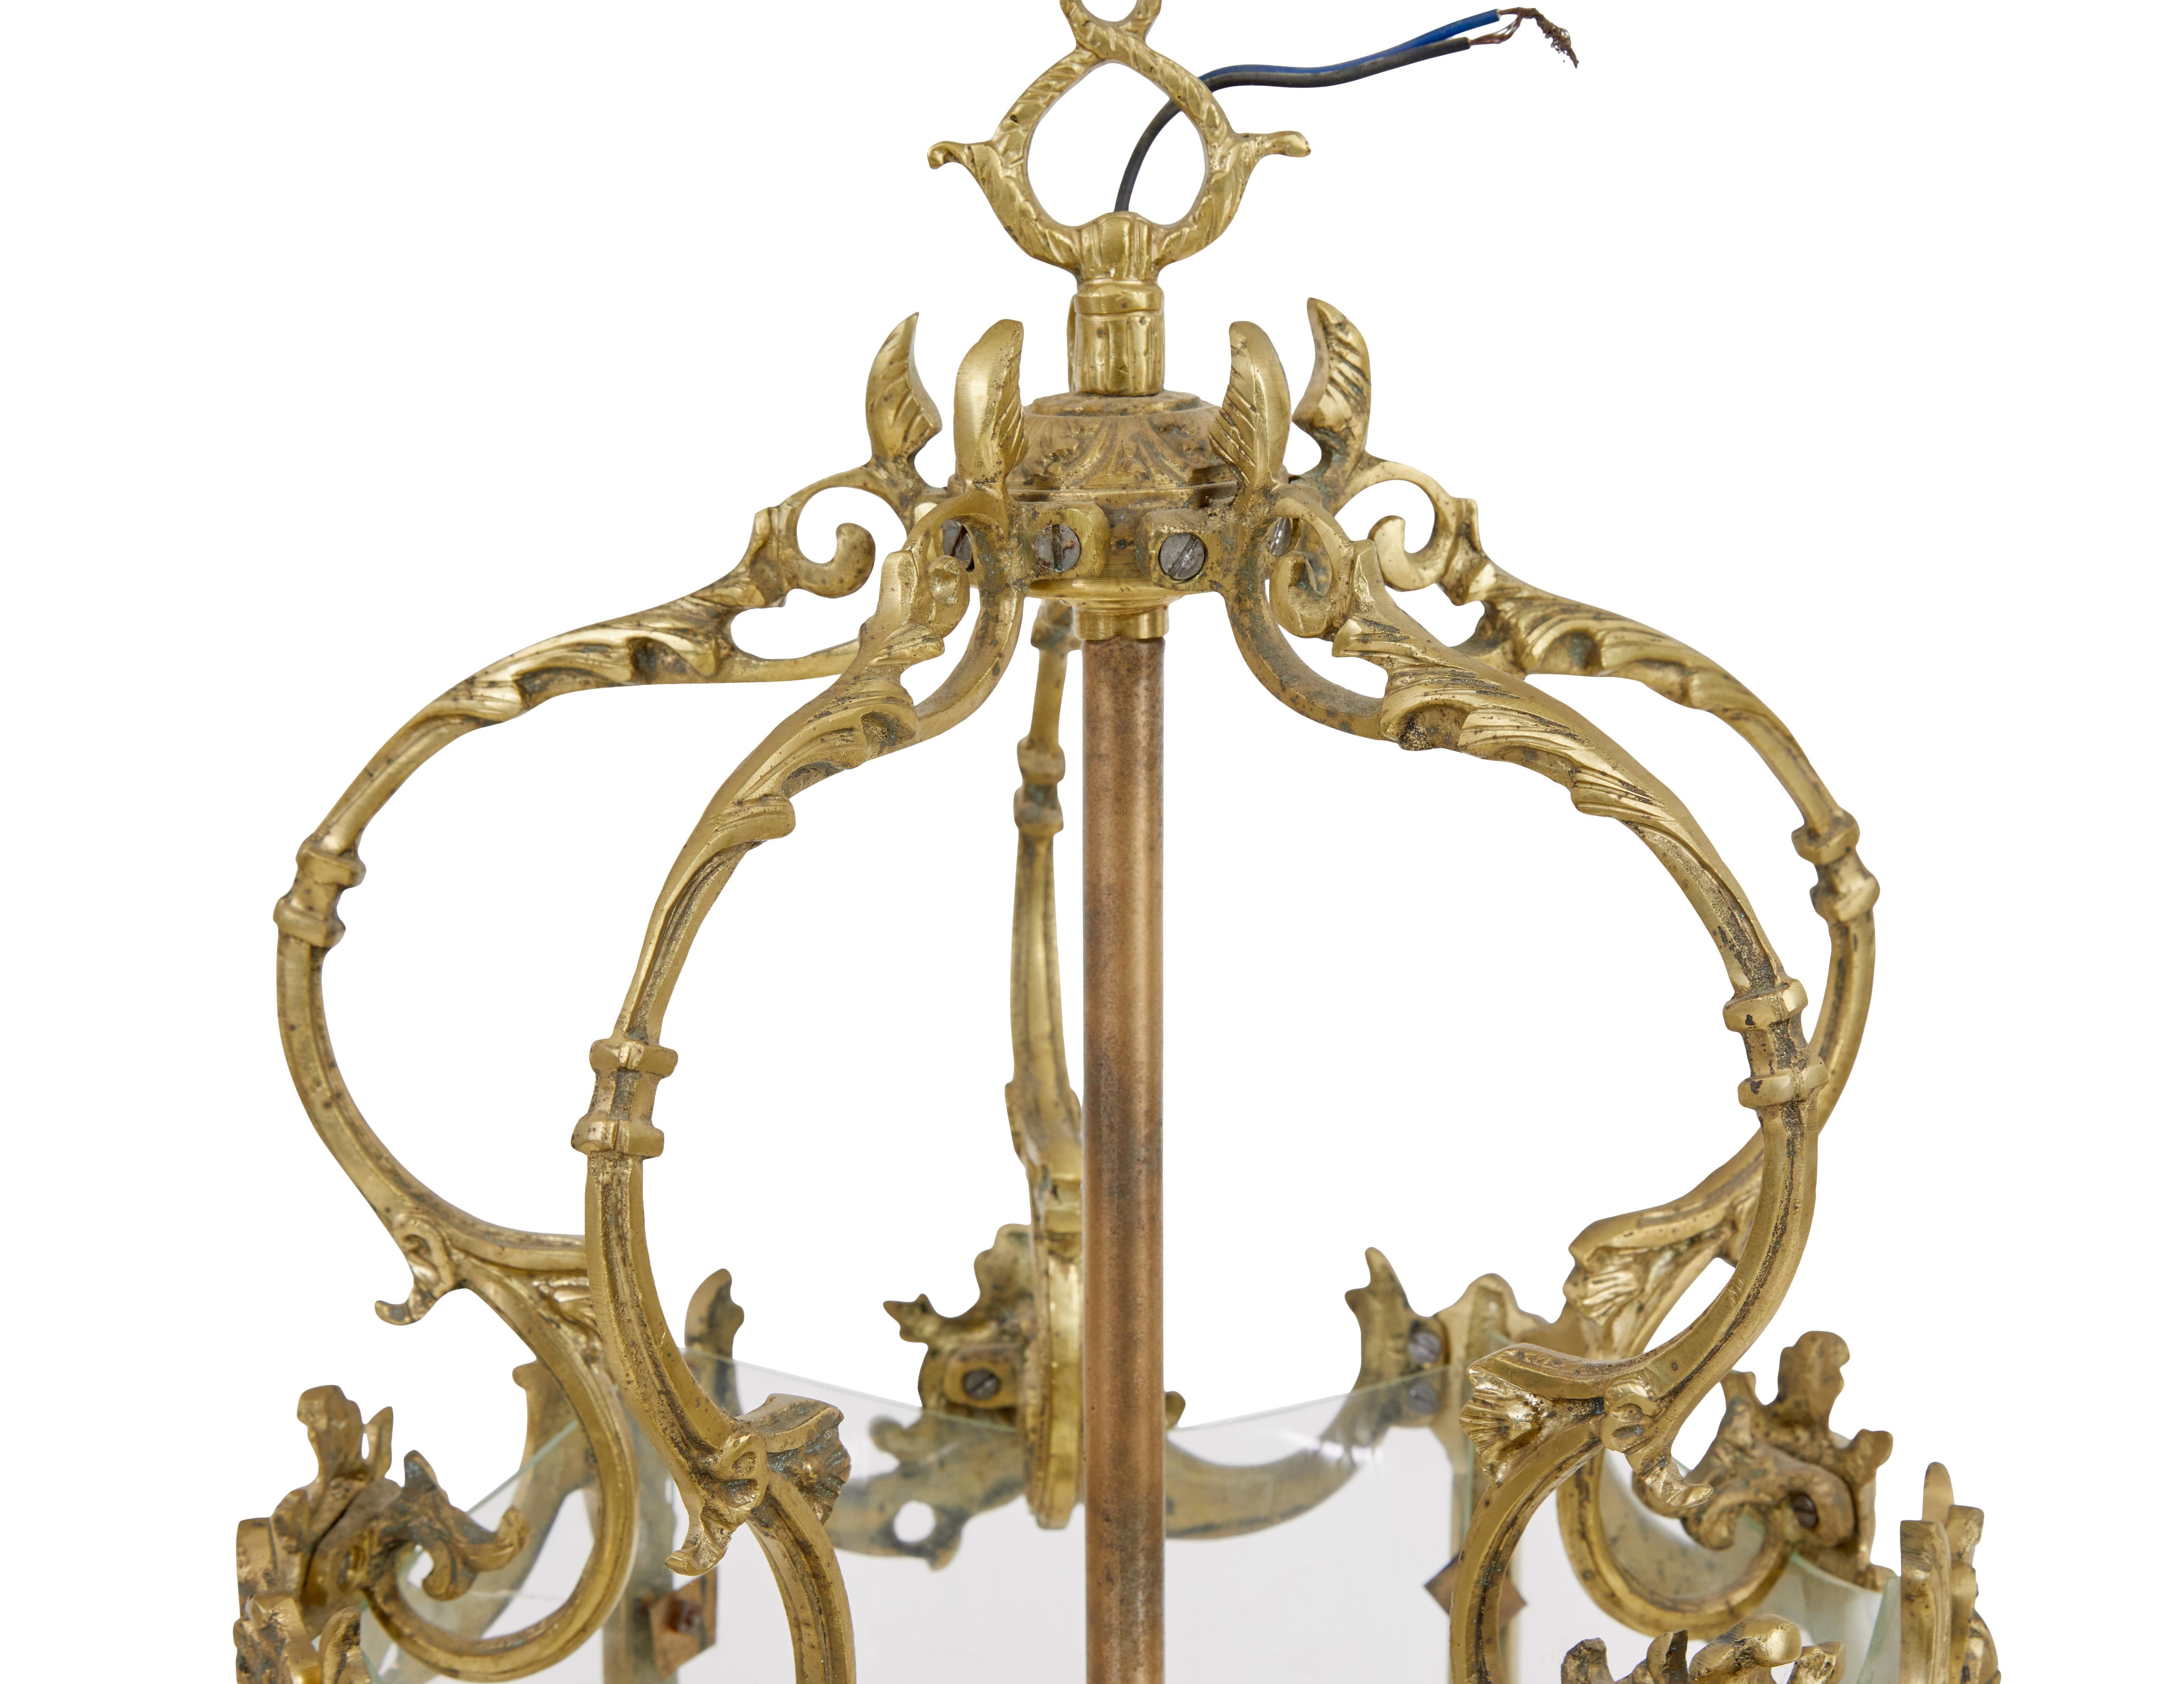 Französische Ormolu-Laterne aus dem frühen 20. Jahrhundert, um 1910.

Original geätztes Glas in einem dekorativen Ormolu-Rahmen.  Ideale Größe und Form für den Flur oder Eingang.

Diese Laterne ist verkabelt, aber nicht getestet, wir empfehlen, dass